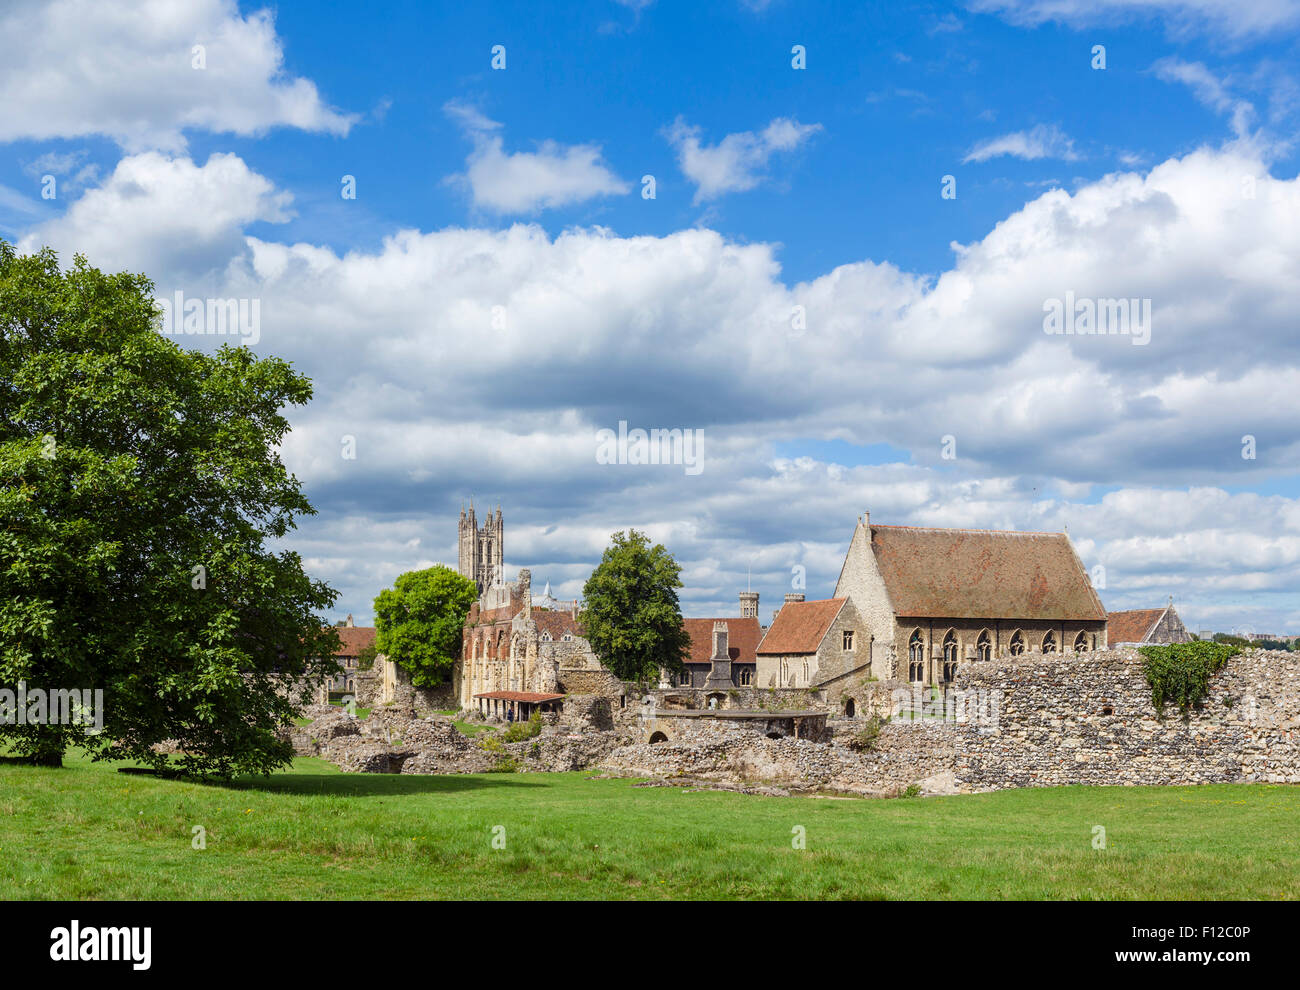 Les ruines de l'abbaye de St Augstine avec la tour de la Cathédrale de Canterbury derrière, Canterbury, Kent, England, UK Banque D'Images